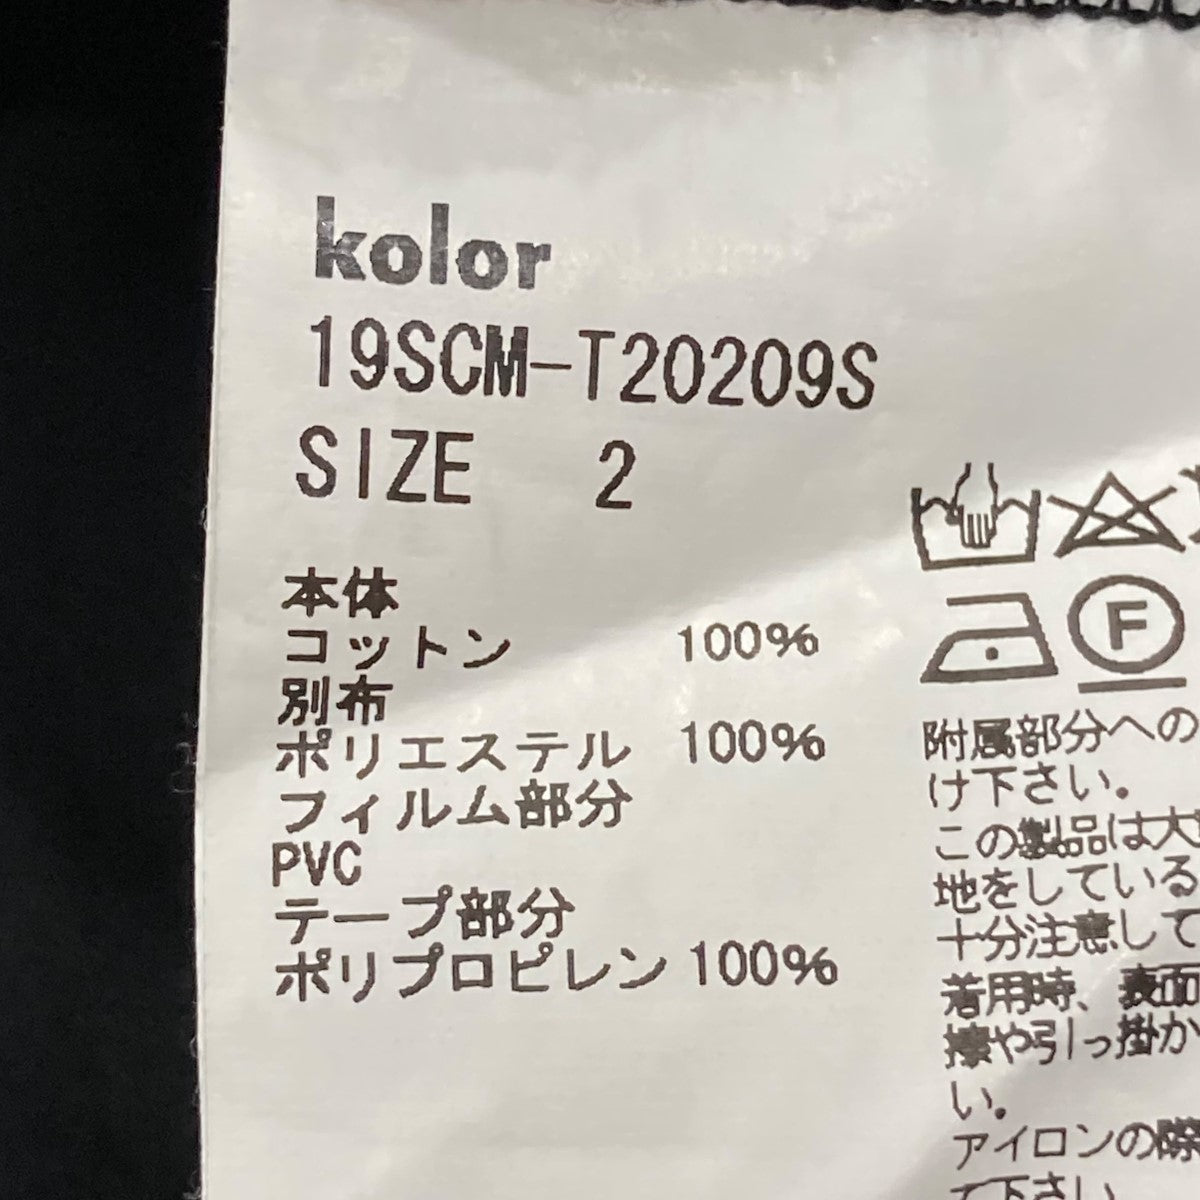 KOLOR(カラー) Tシャツ 19SCM-T20209S 19SCM-T20209S ブラック サイズ ...